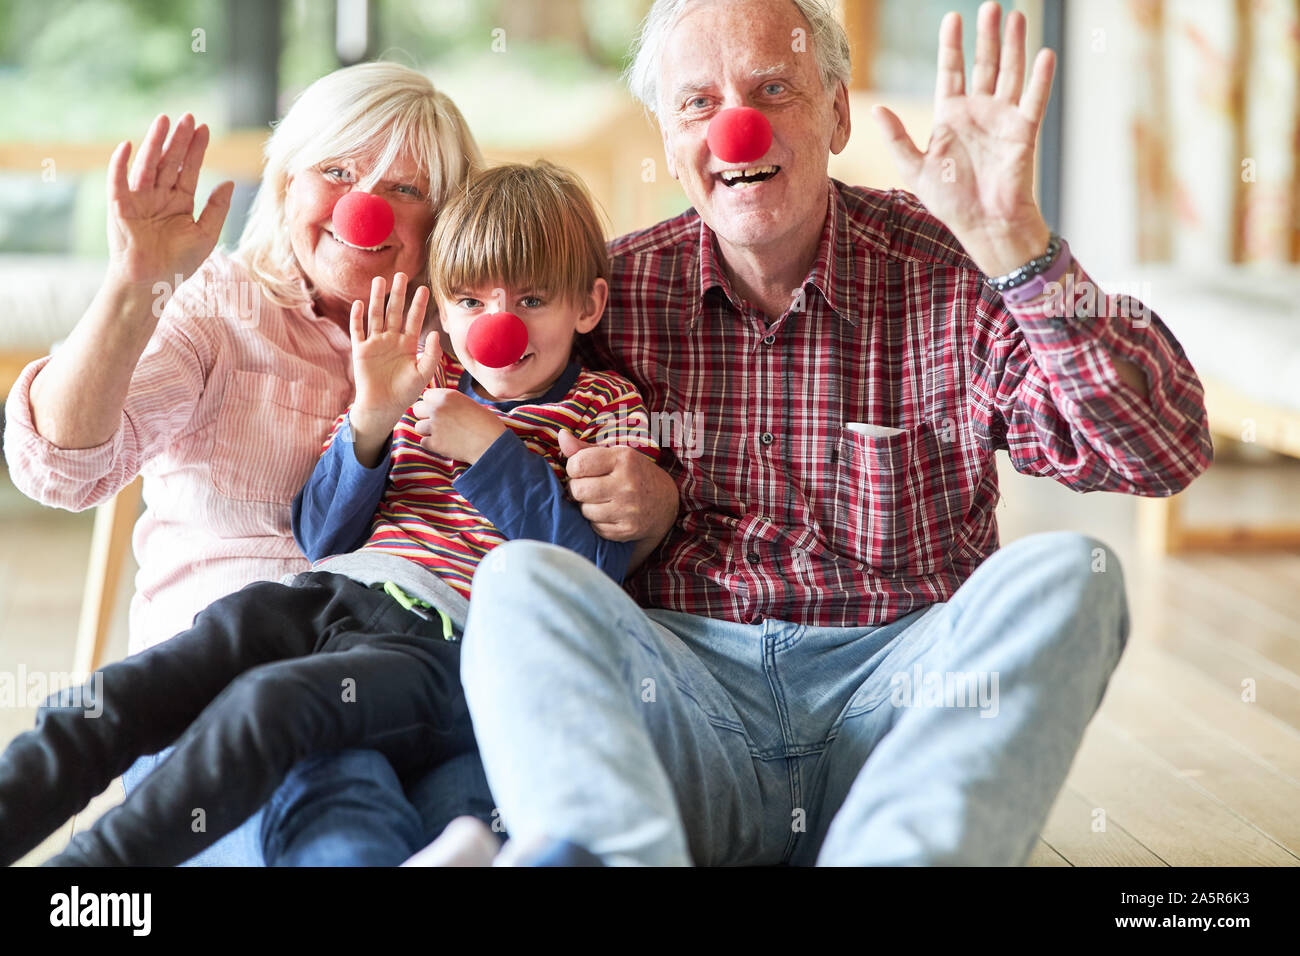 Großeltern feiern Karneval mit enkelkind Getarnt als Clown mit roter Nase Stockfoto